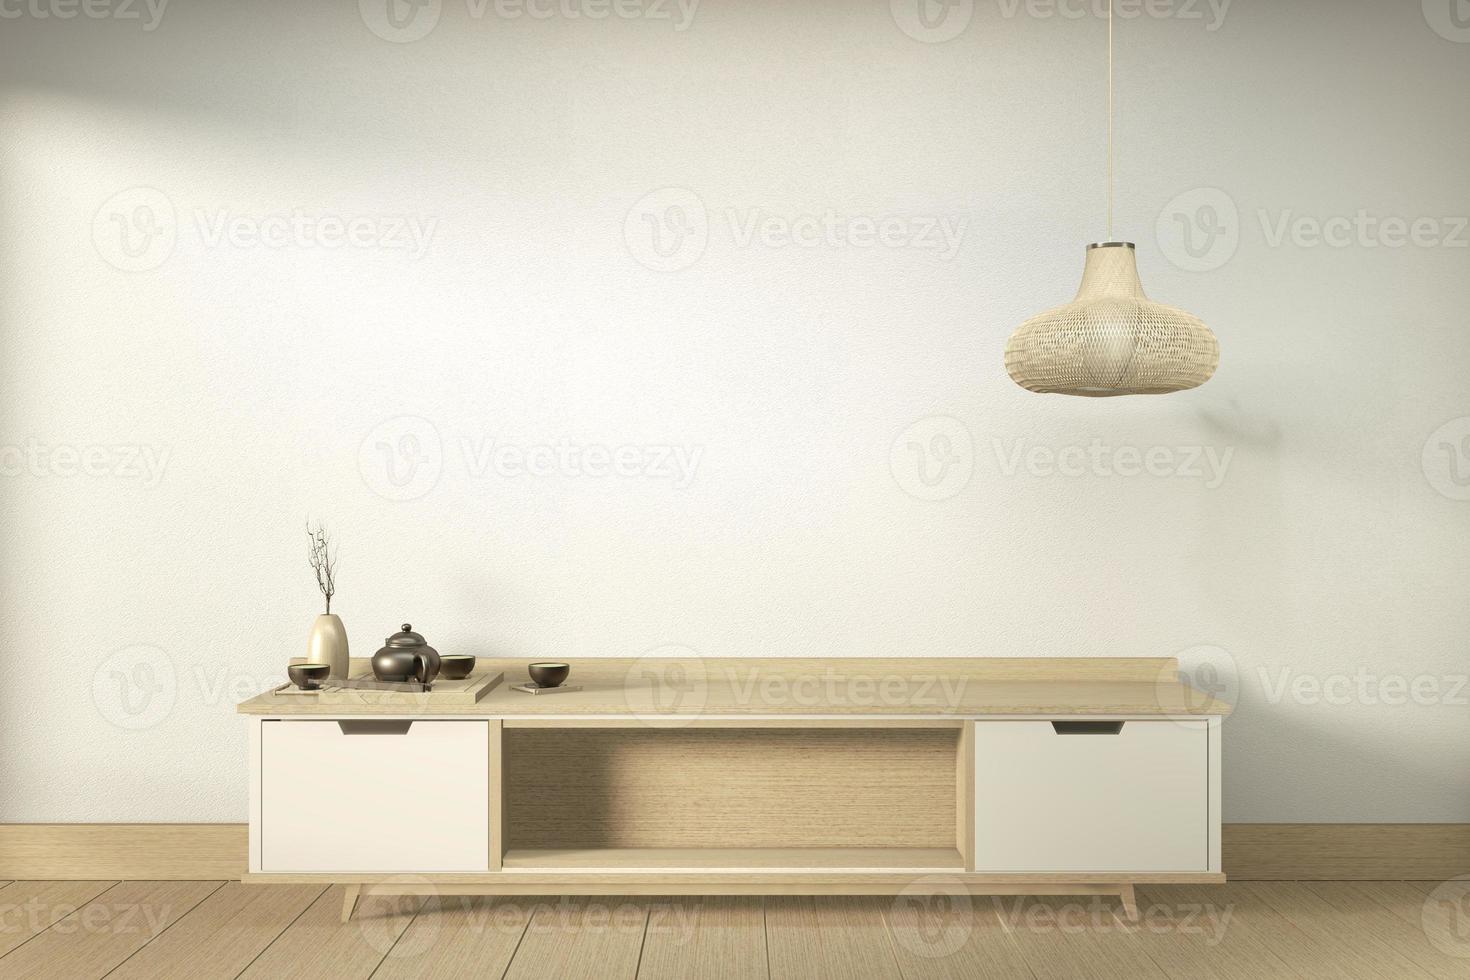 meuble de télévision dans une pièce vide moderne japonaise - style zen, designs minimaux. rendu 3D photo